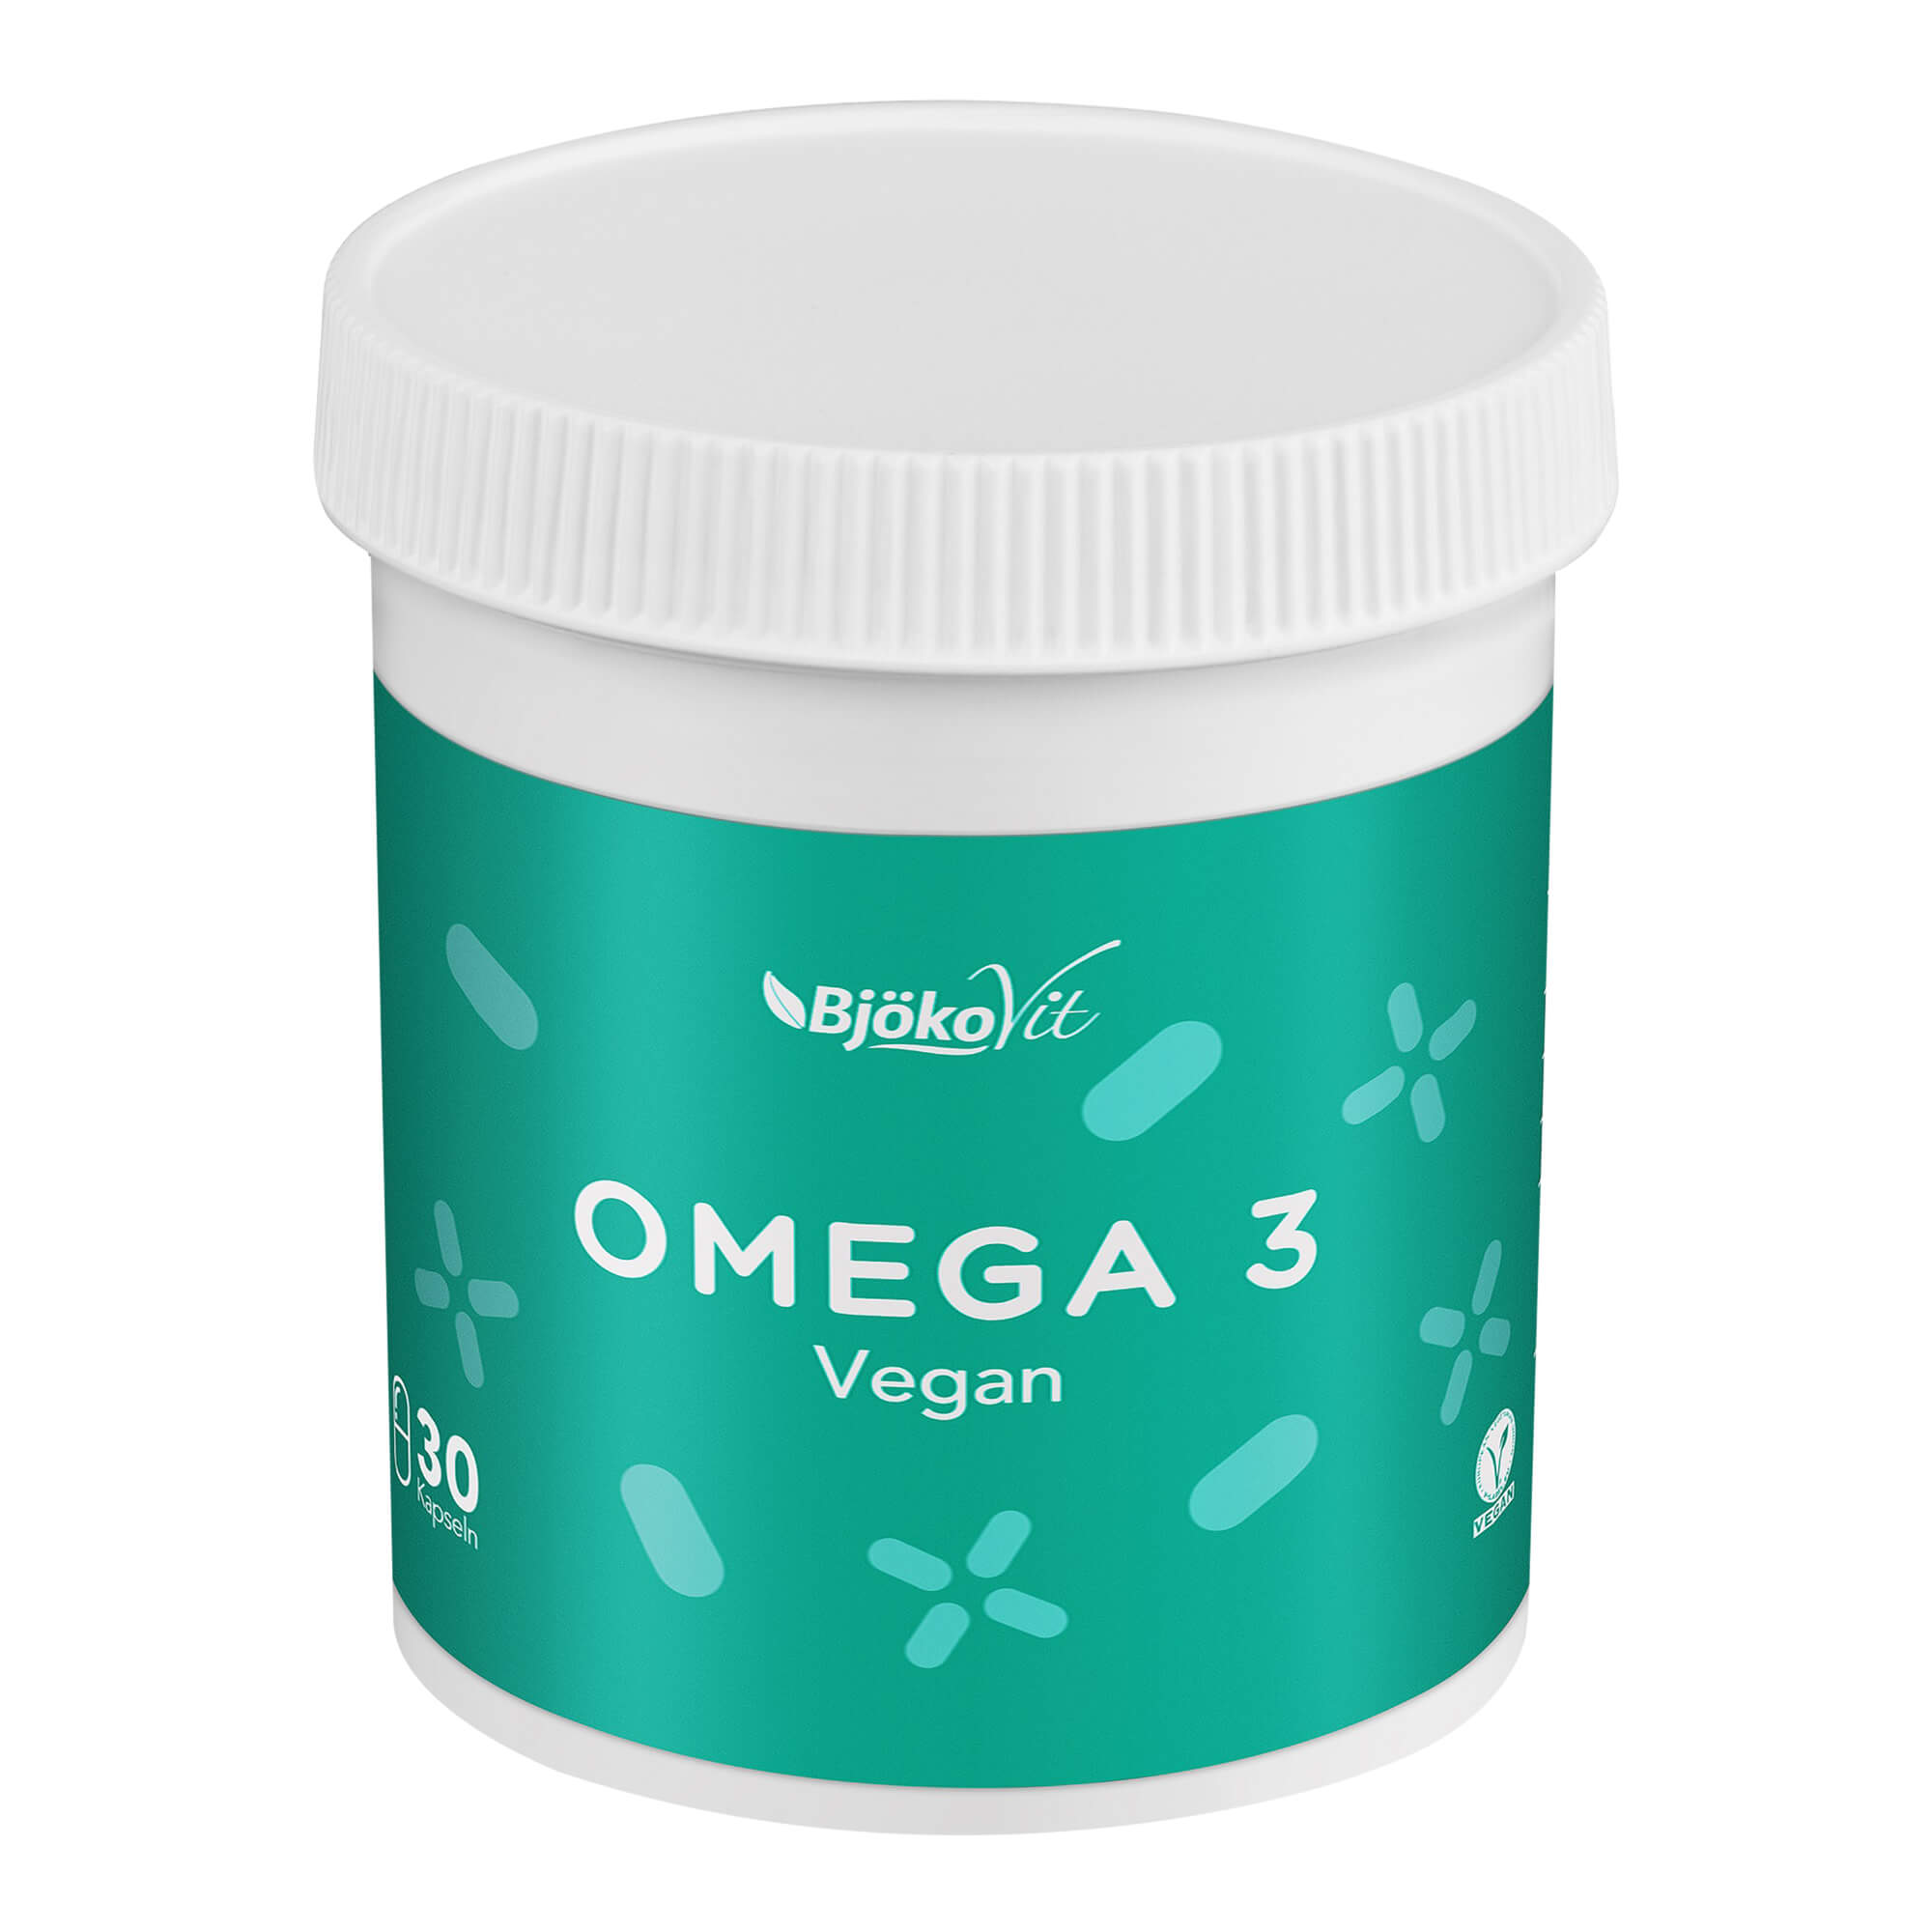 Nahrungsergänzungsmittel mit Omega 3 Fettsäuren (Vegan).